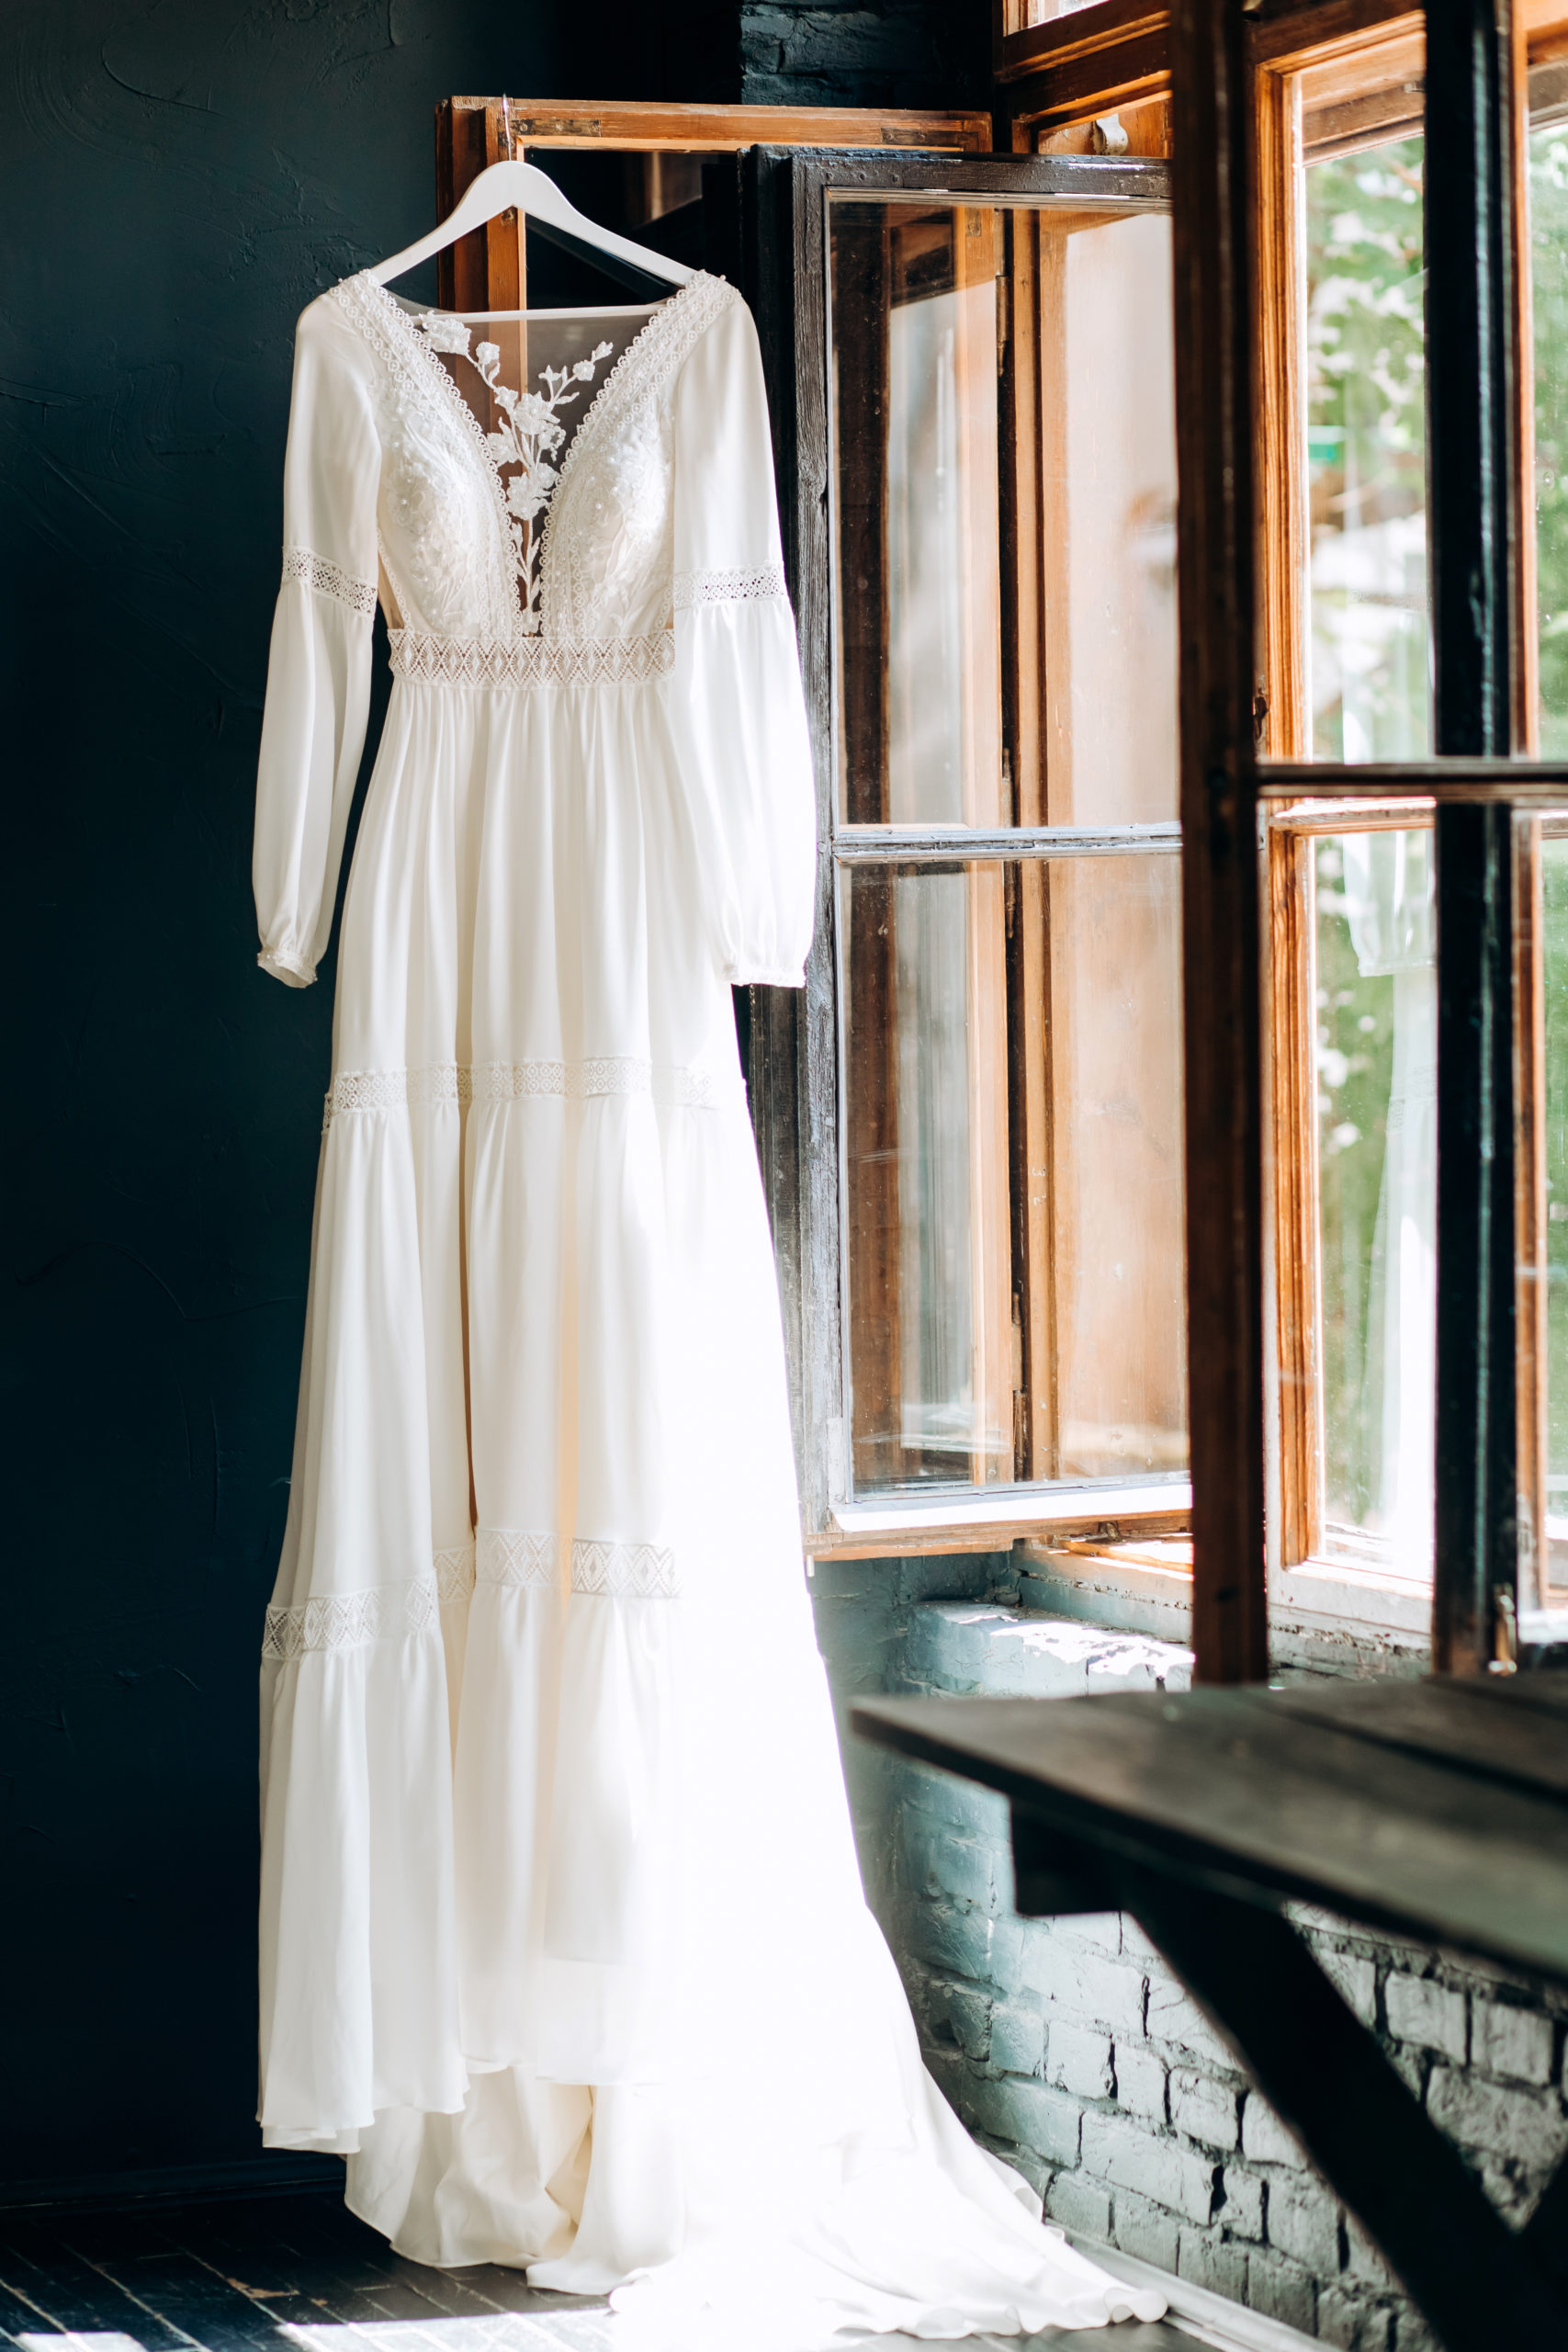 Brautkleid hängt nach Hochzeit am Fenster